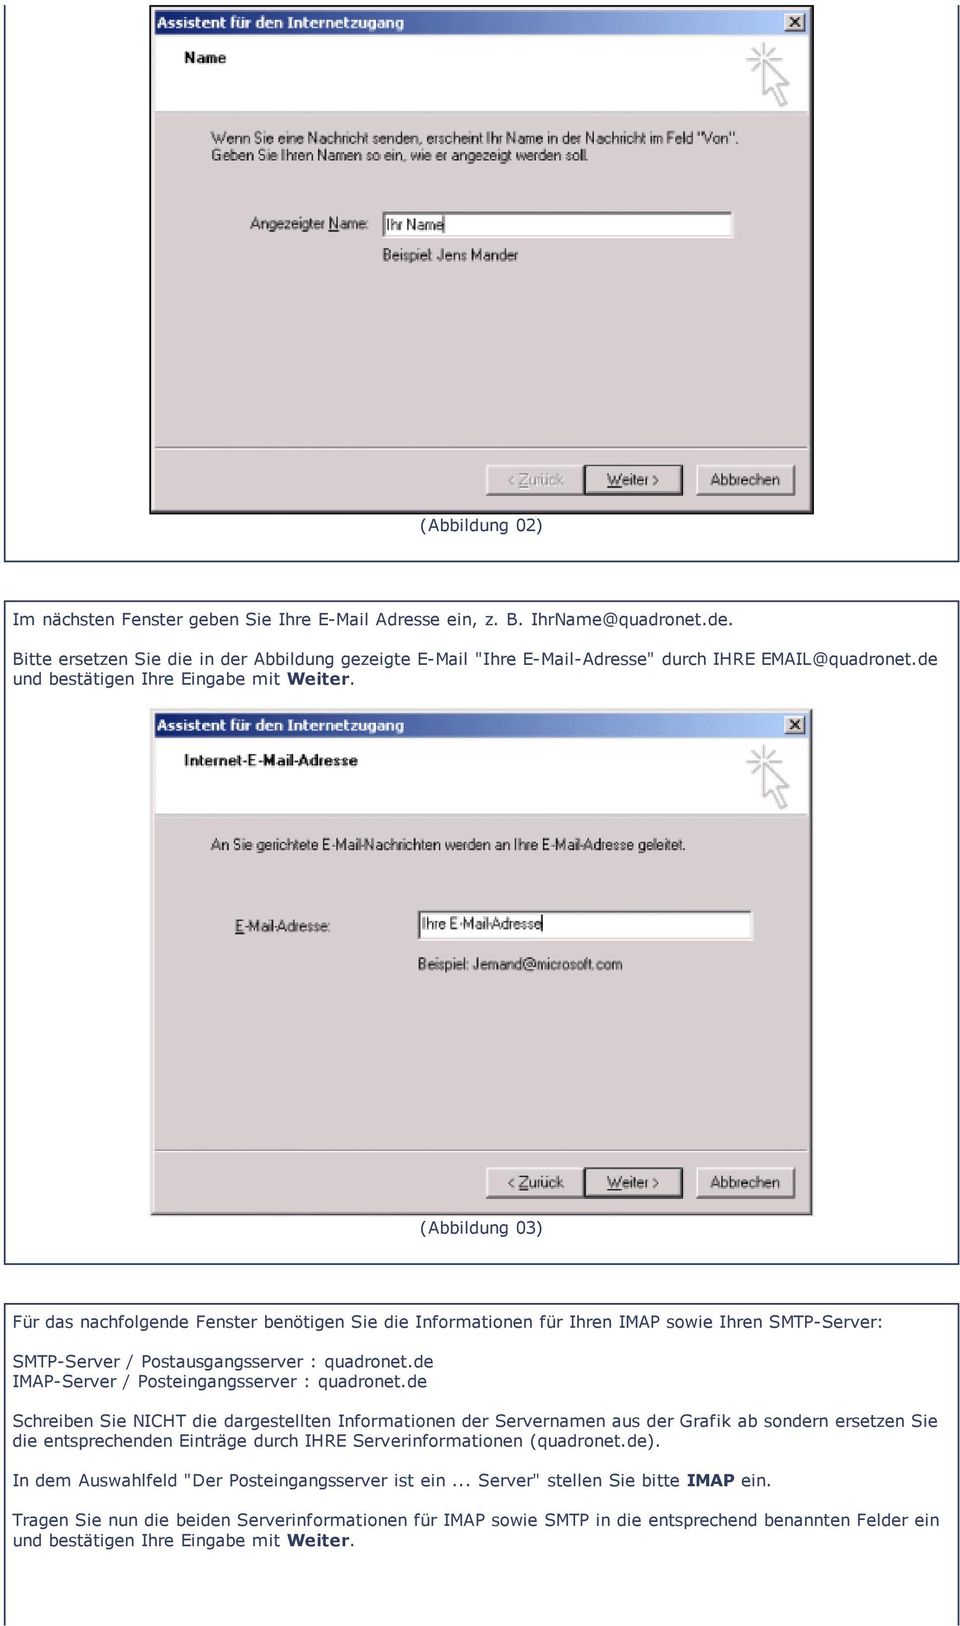 (Abbildung 03) Für das nachfolgende Fenster benötigen Sie die Informationen für Ihren IMAP sowie Ihren SMTP Server: SMTP Server / Postausgangsserver : quadronet.